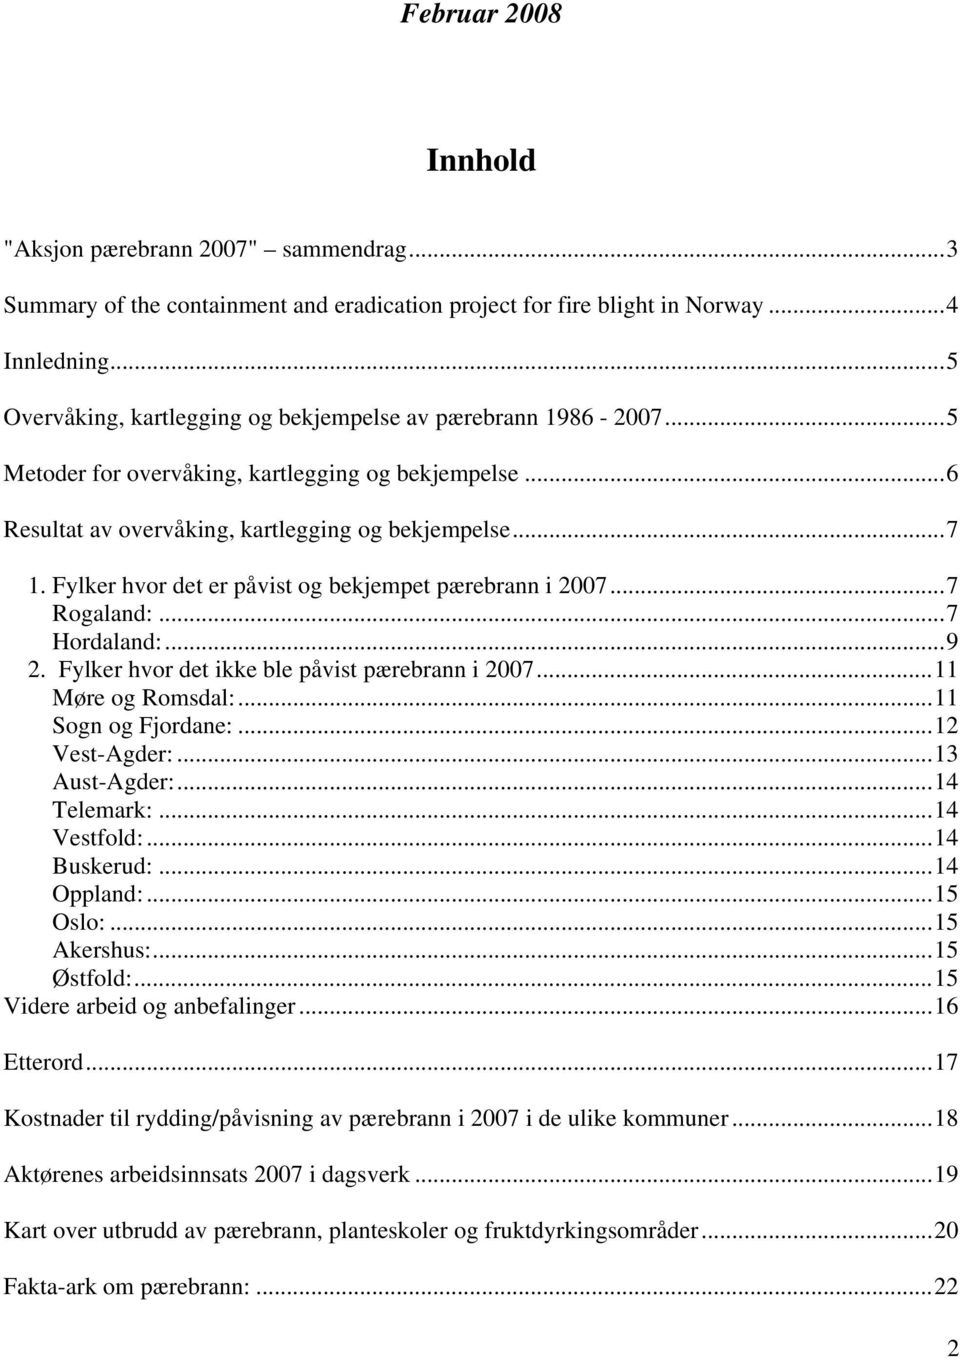 Fylker hvor det er påvist og bekjempet pærebrann i 2007...7 Rogaland:...7 Hordaland:...9 2. Fylker hvor det ikke ble påvist pærebrann i 2007...11 Møre og Romsdal:...11 Sogn og Fjordane:.